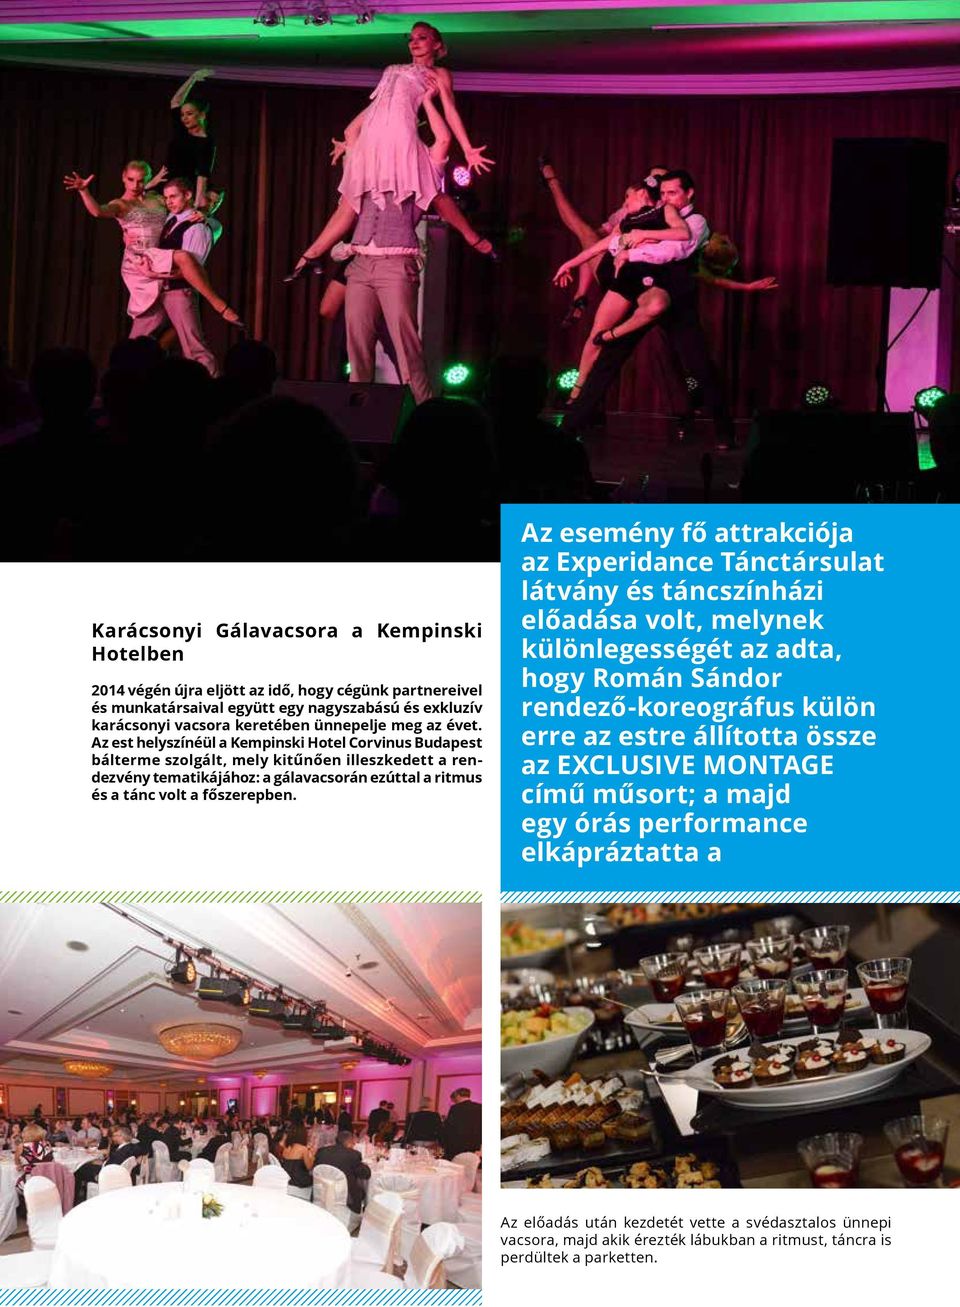 Az est helyszínéül a Kempinski Hotel Corvinus Budapest bálterme szolgált, mely kitűnően illeszkedett a rendezvény tematikájához: a gálavacsorán ezúttal a ritmus és a tánc volt a főszerepben.